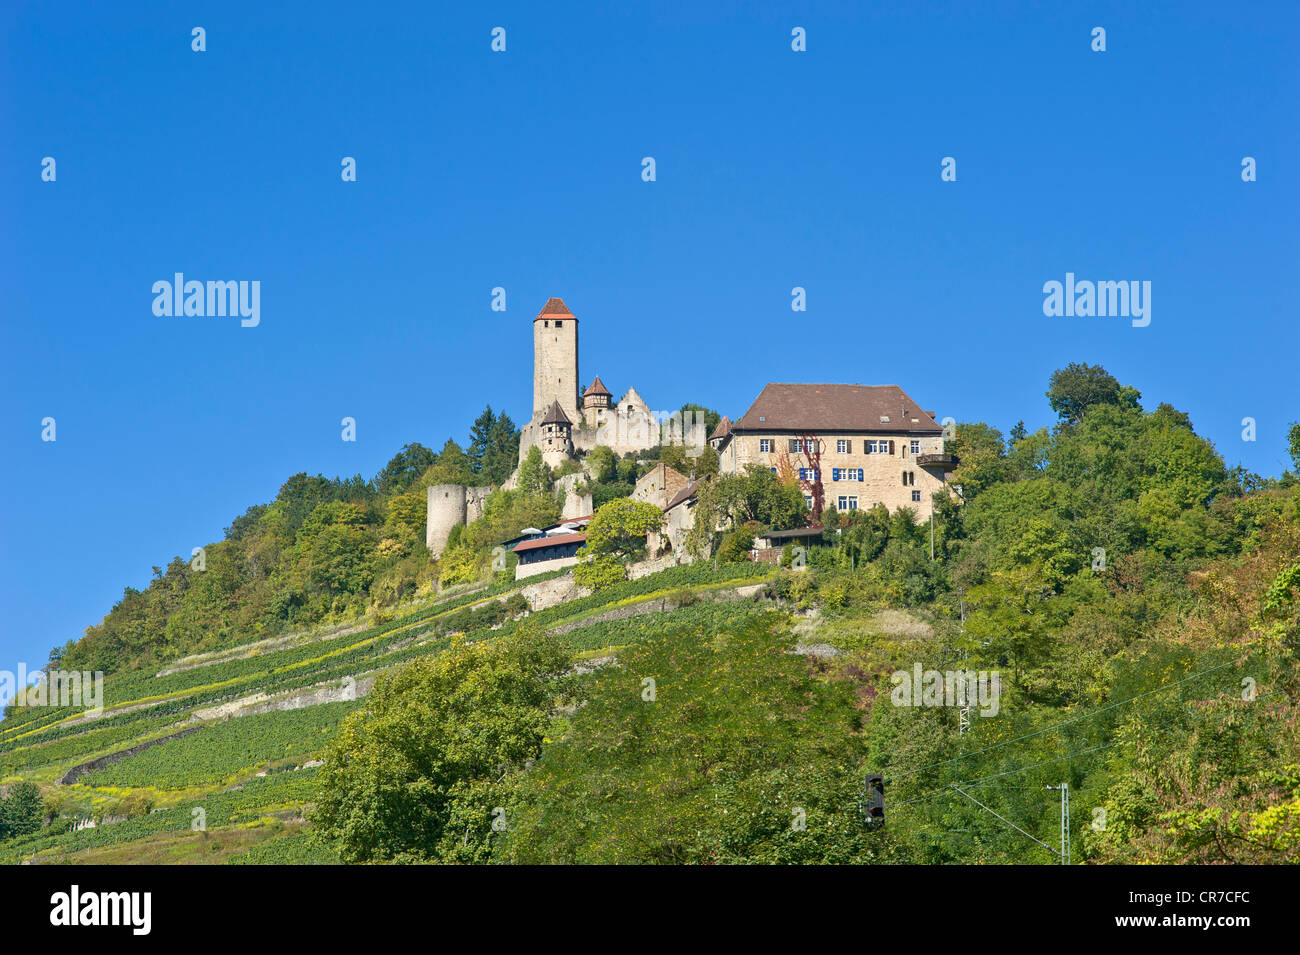 Burg Hornberg castle, Neckarzimmern, Neckartal, Baden-Wuerttemberg, Germany, Europe Stock Photo